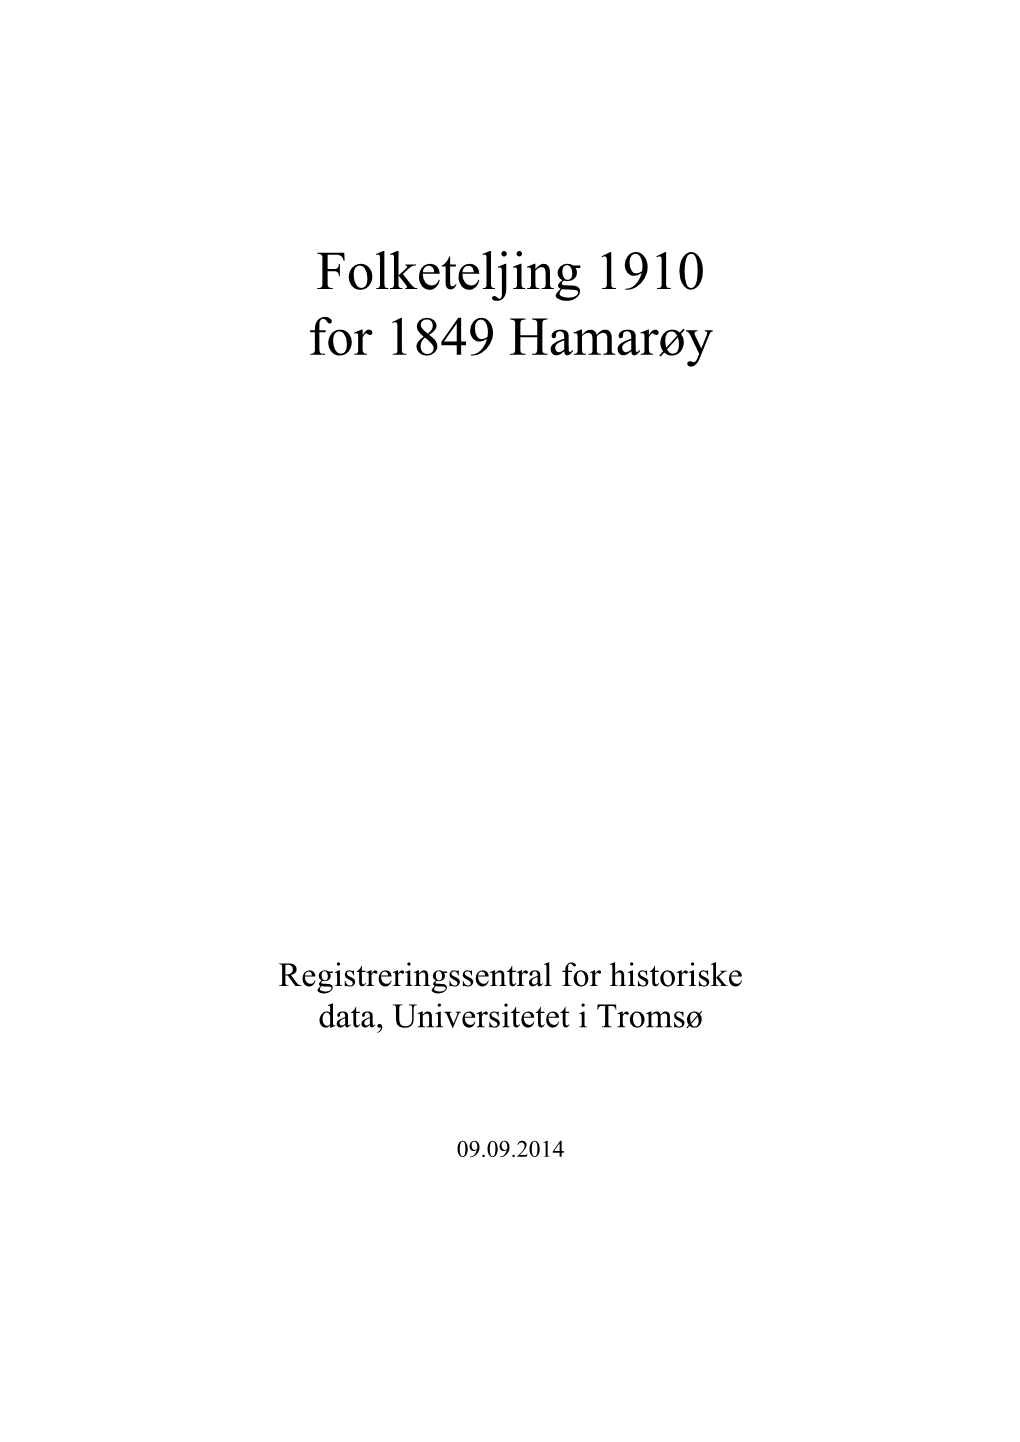 Folketeljing 1910 for 1849 Hamarøy